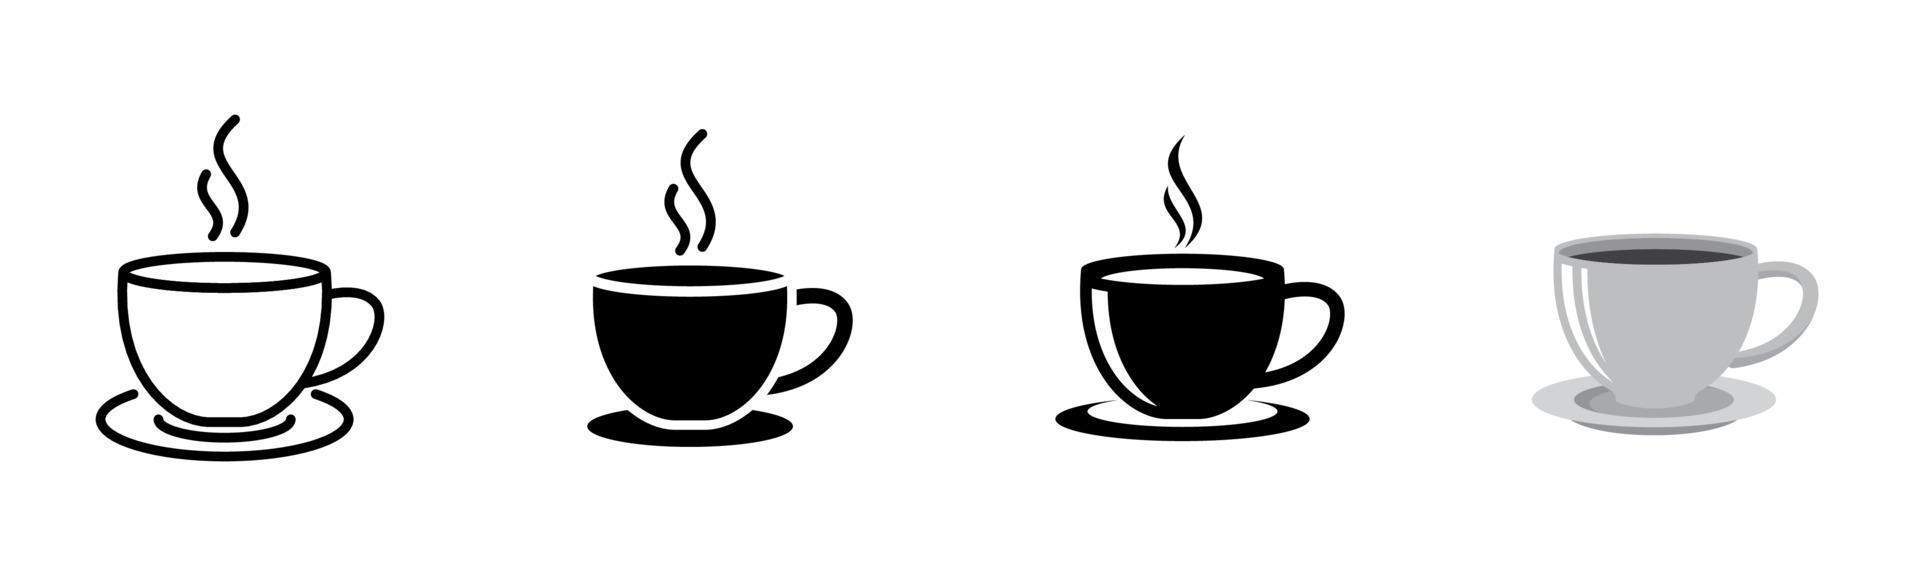 conjunto de ícones de xícara de café de 4, elemento de design adequado para sites, design de impressão ou aplicativo vetor